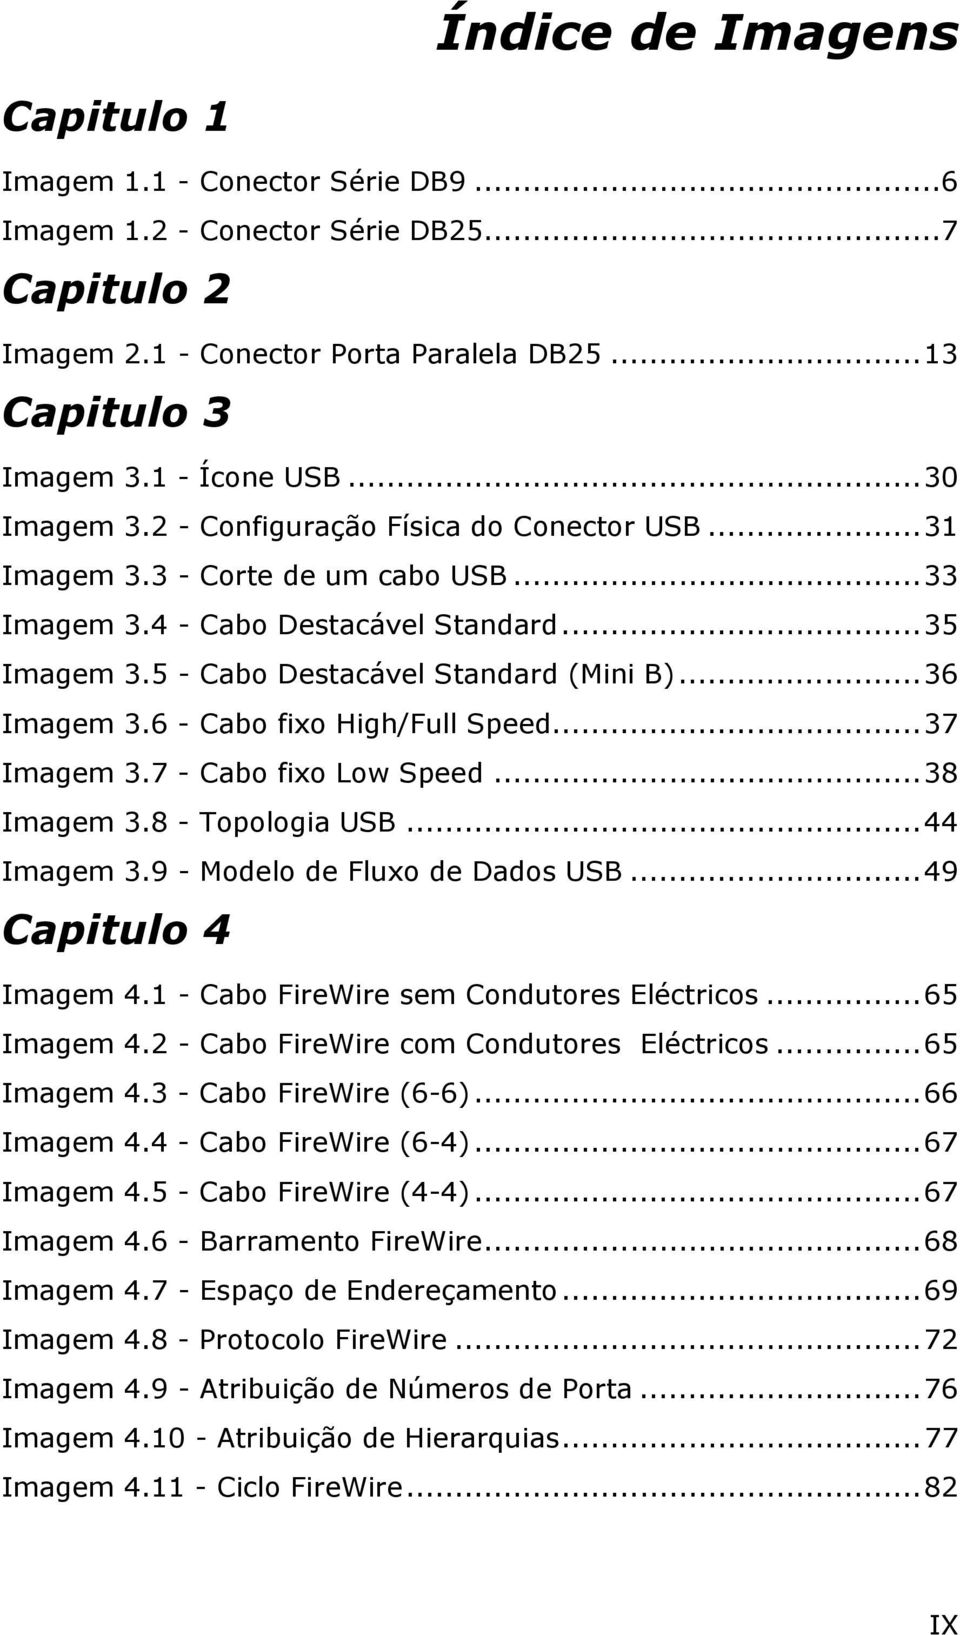 6 - Cabo fixo High/Full Speed...37 Imagem 3.7 - Cabo fixo Low Speed...38 Imagem 3.8 - Topologia USB...44 Imagem 3.9 - Modelo de Fluxo de Dados USB...49 Capitulo 4 Imagem 4.